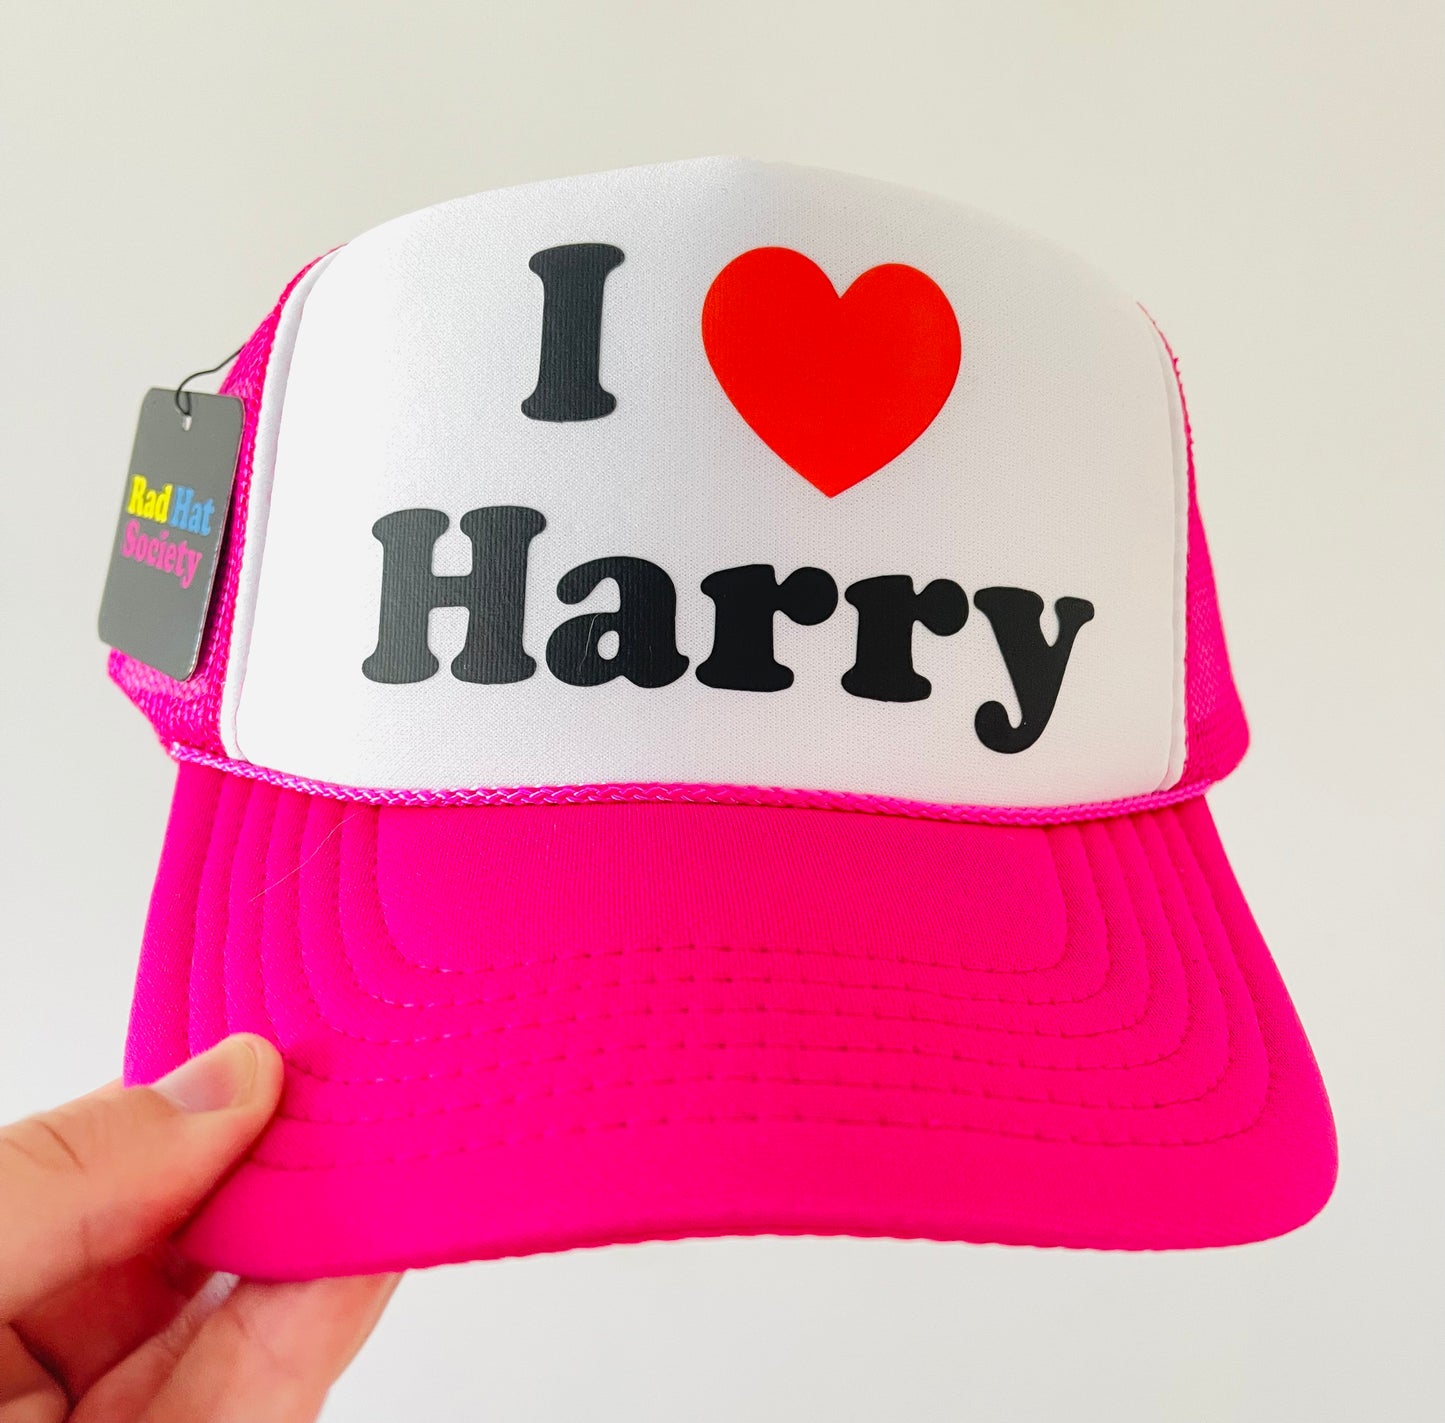 I ❤️ Harry (I love Harry)